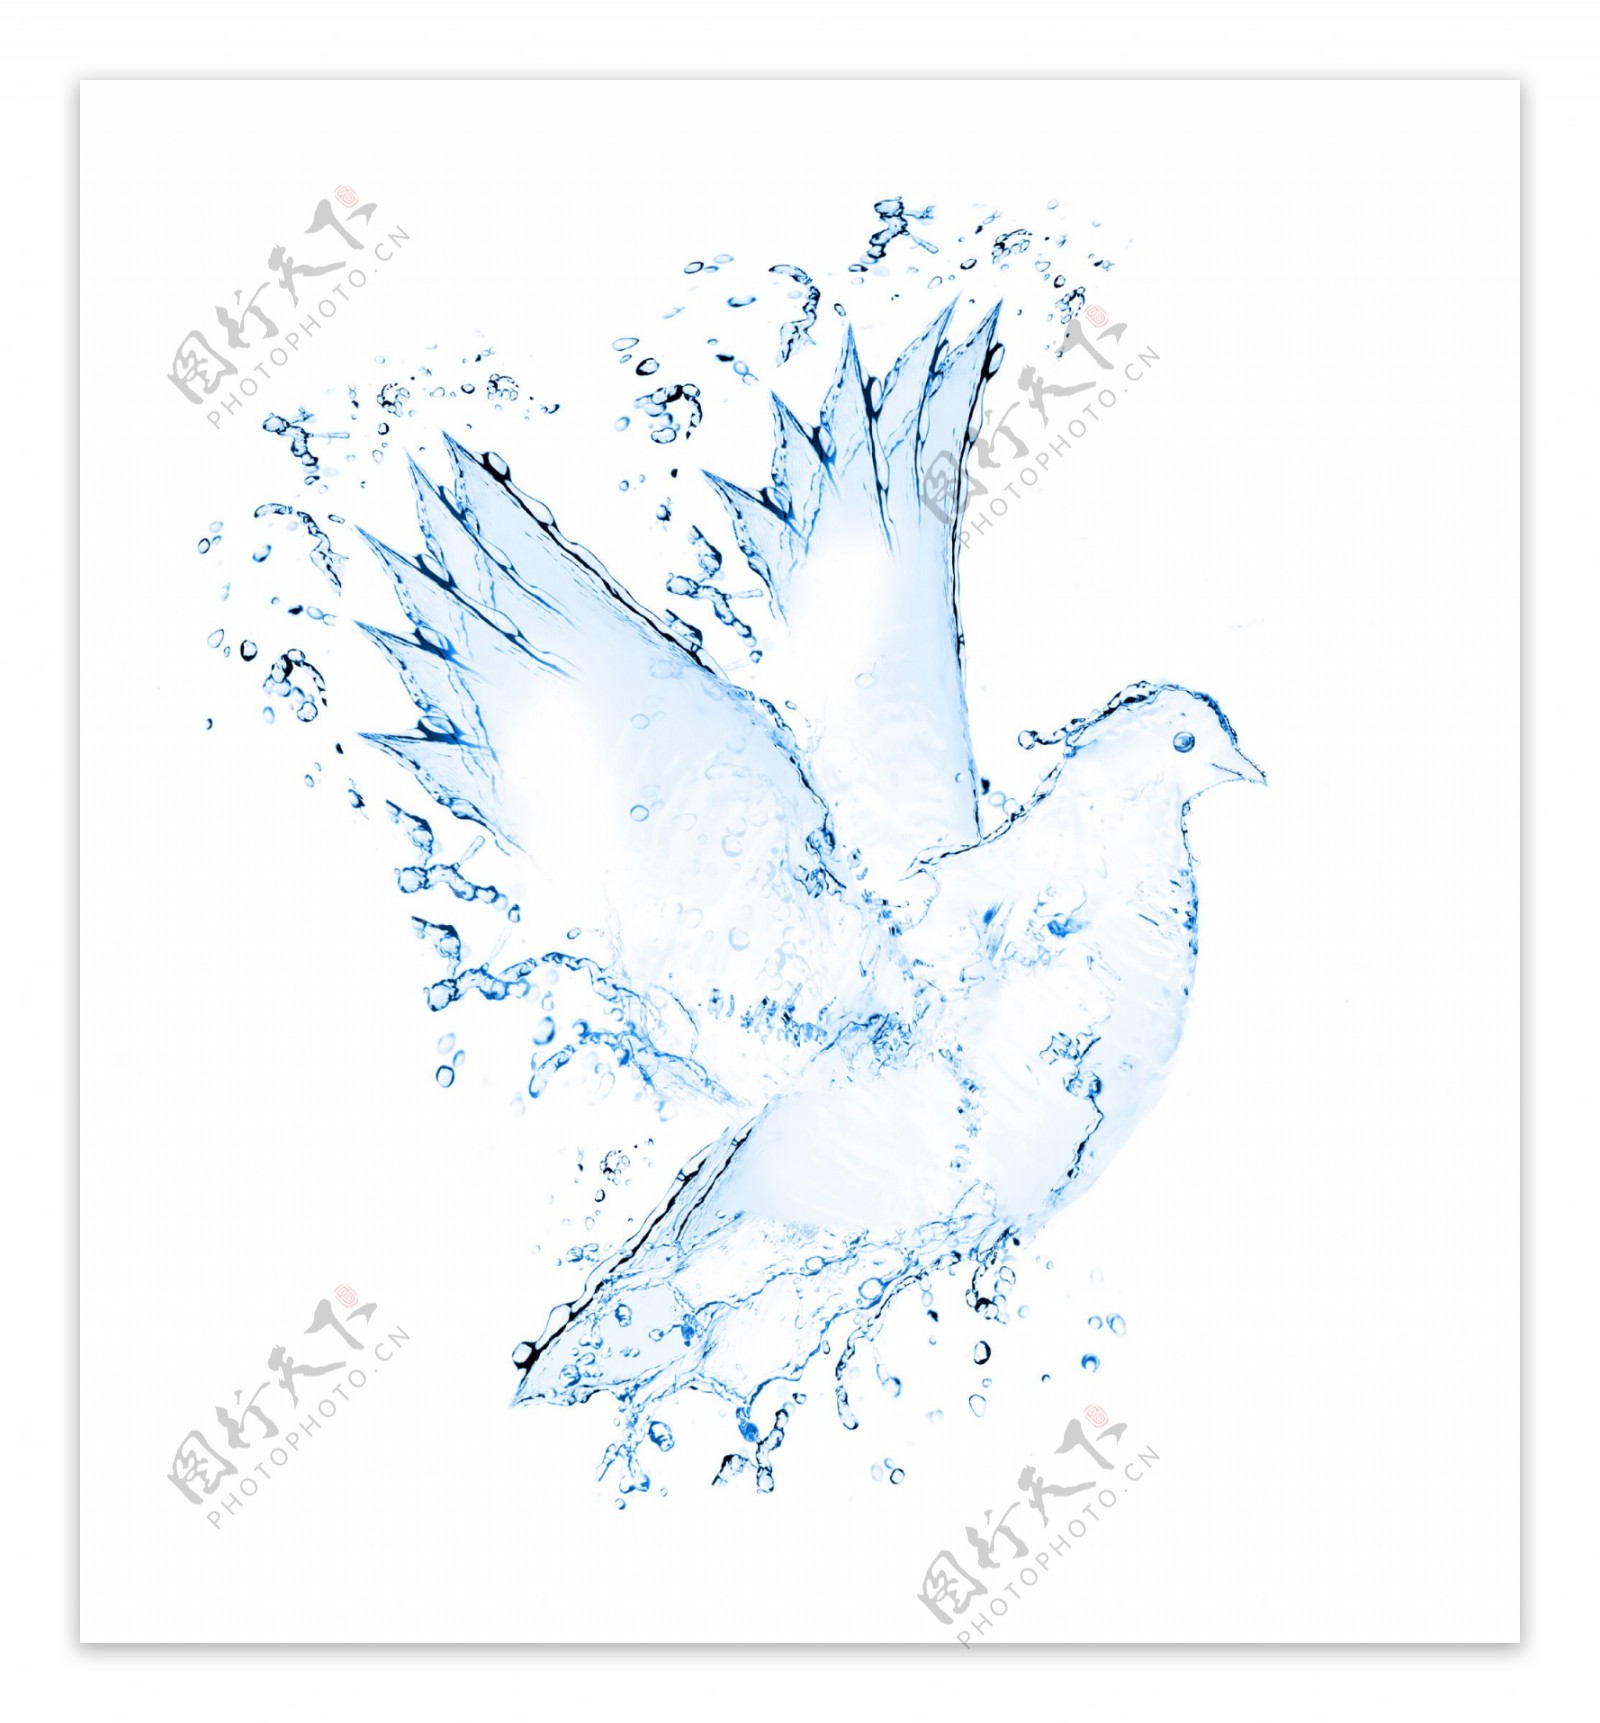 液态水组成的鸽子图案创意图片